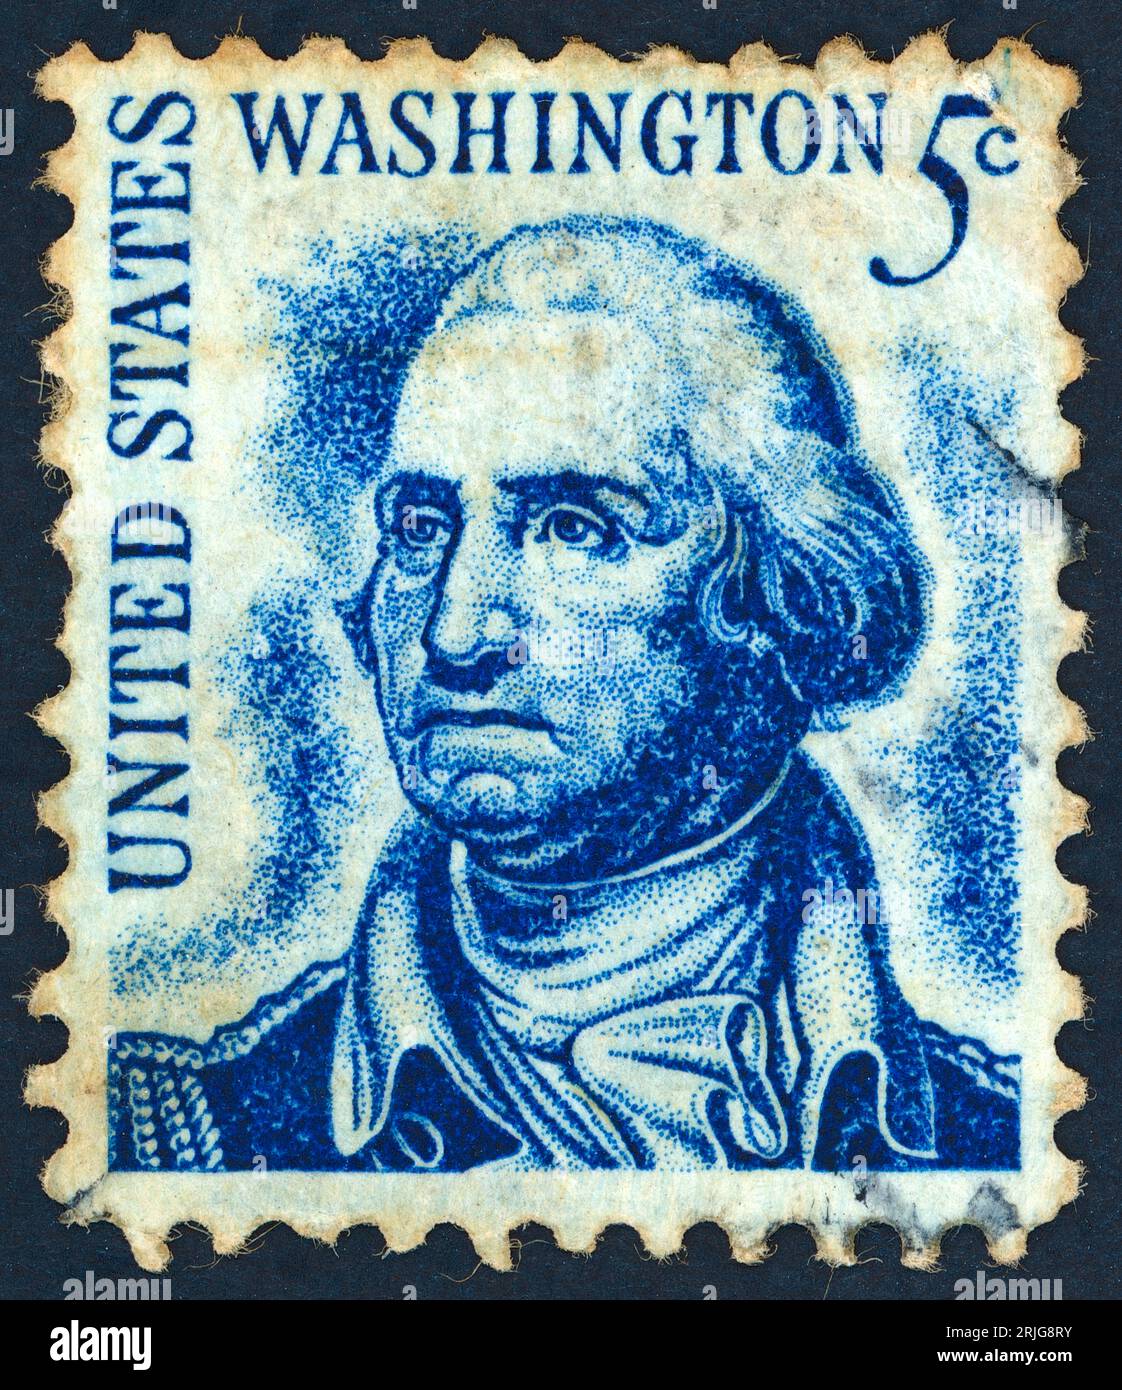 George Washington (1732–1799). Briefmarke, die 1966 in den USA ausgestellt wurde. George Washington, auch Vater seines Landes genannt, war ein amerikanischer General und Oberbefehlshaber der kolonialen Armeen in der Amerikanischen Revolution (1775–83) und später erster Präsident der Vereinigten Staaten (1789–97). Stockfoto